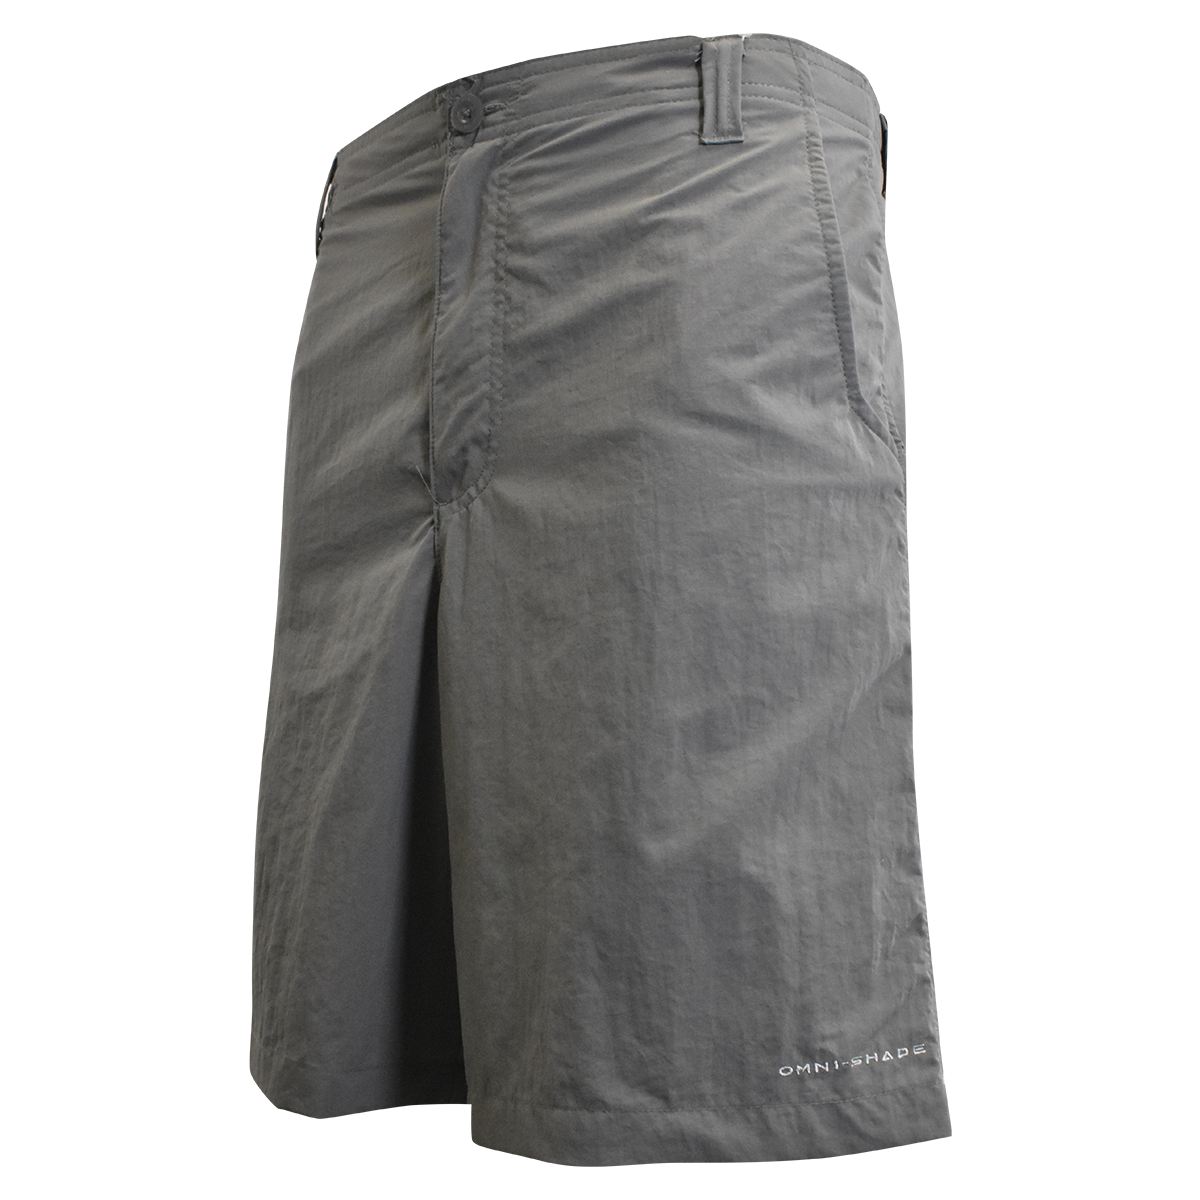 Columbia Men's Cargo Shorts Light Grey PFG Bahama Omni-Shade (019)